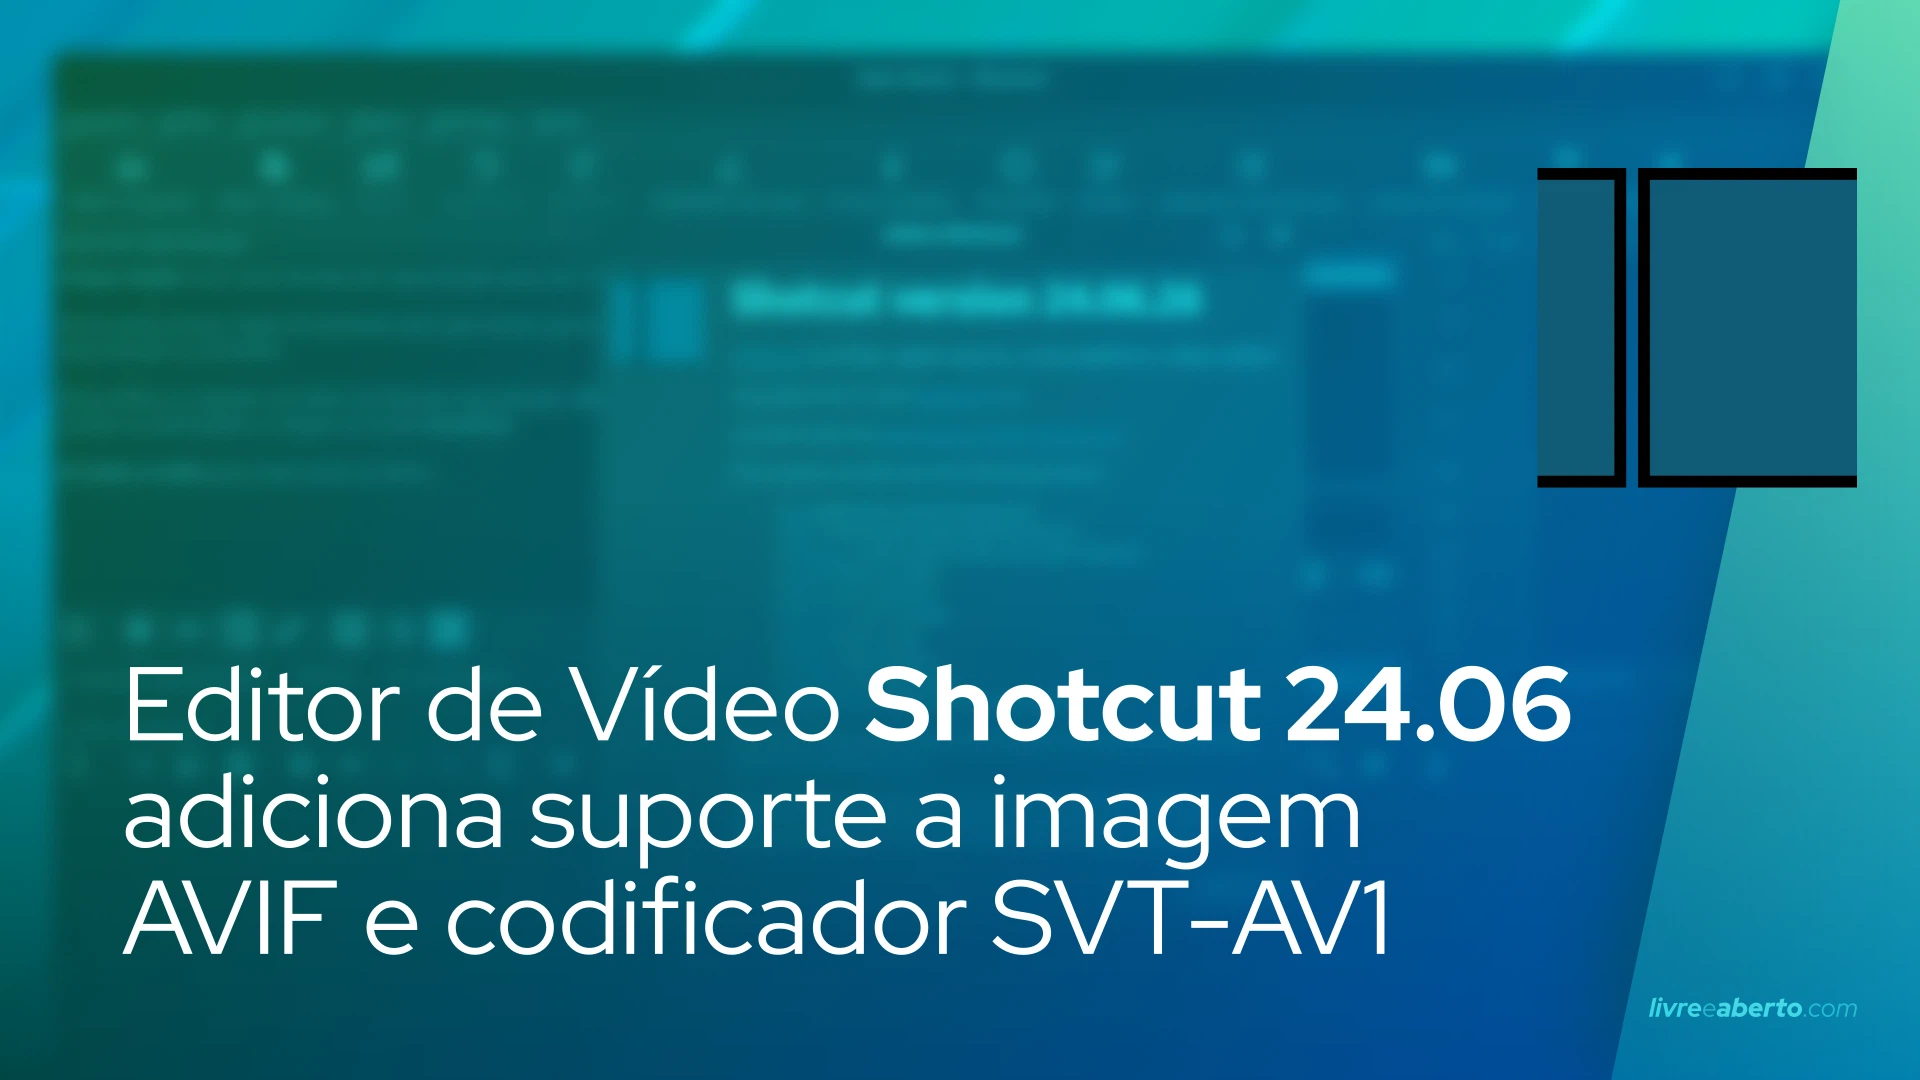 Editor de Vídeo Shotcut 24.06 adiciona suporte a imagem AVIF e codificador SVT-AV1